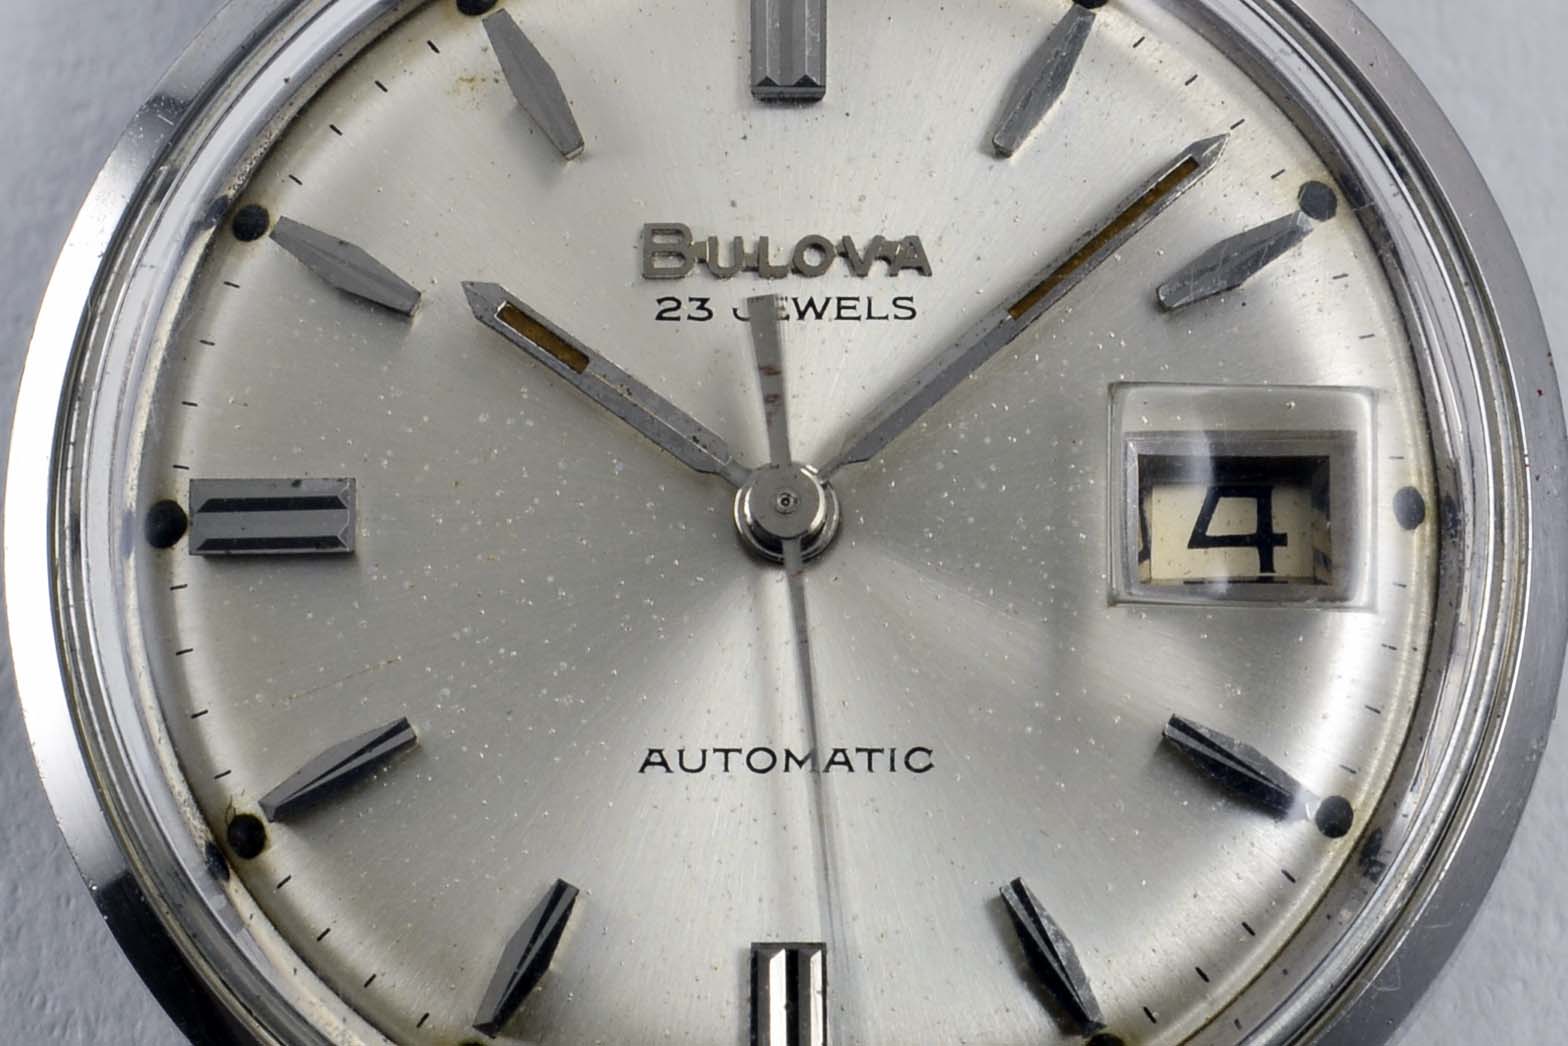 Bulova Date Automatic - 1966 - LumeVille